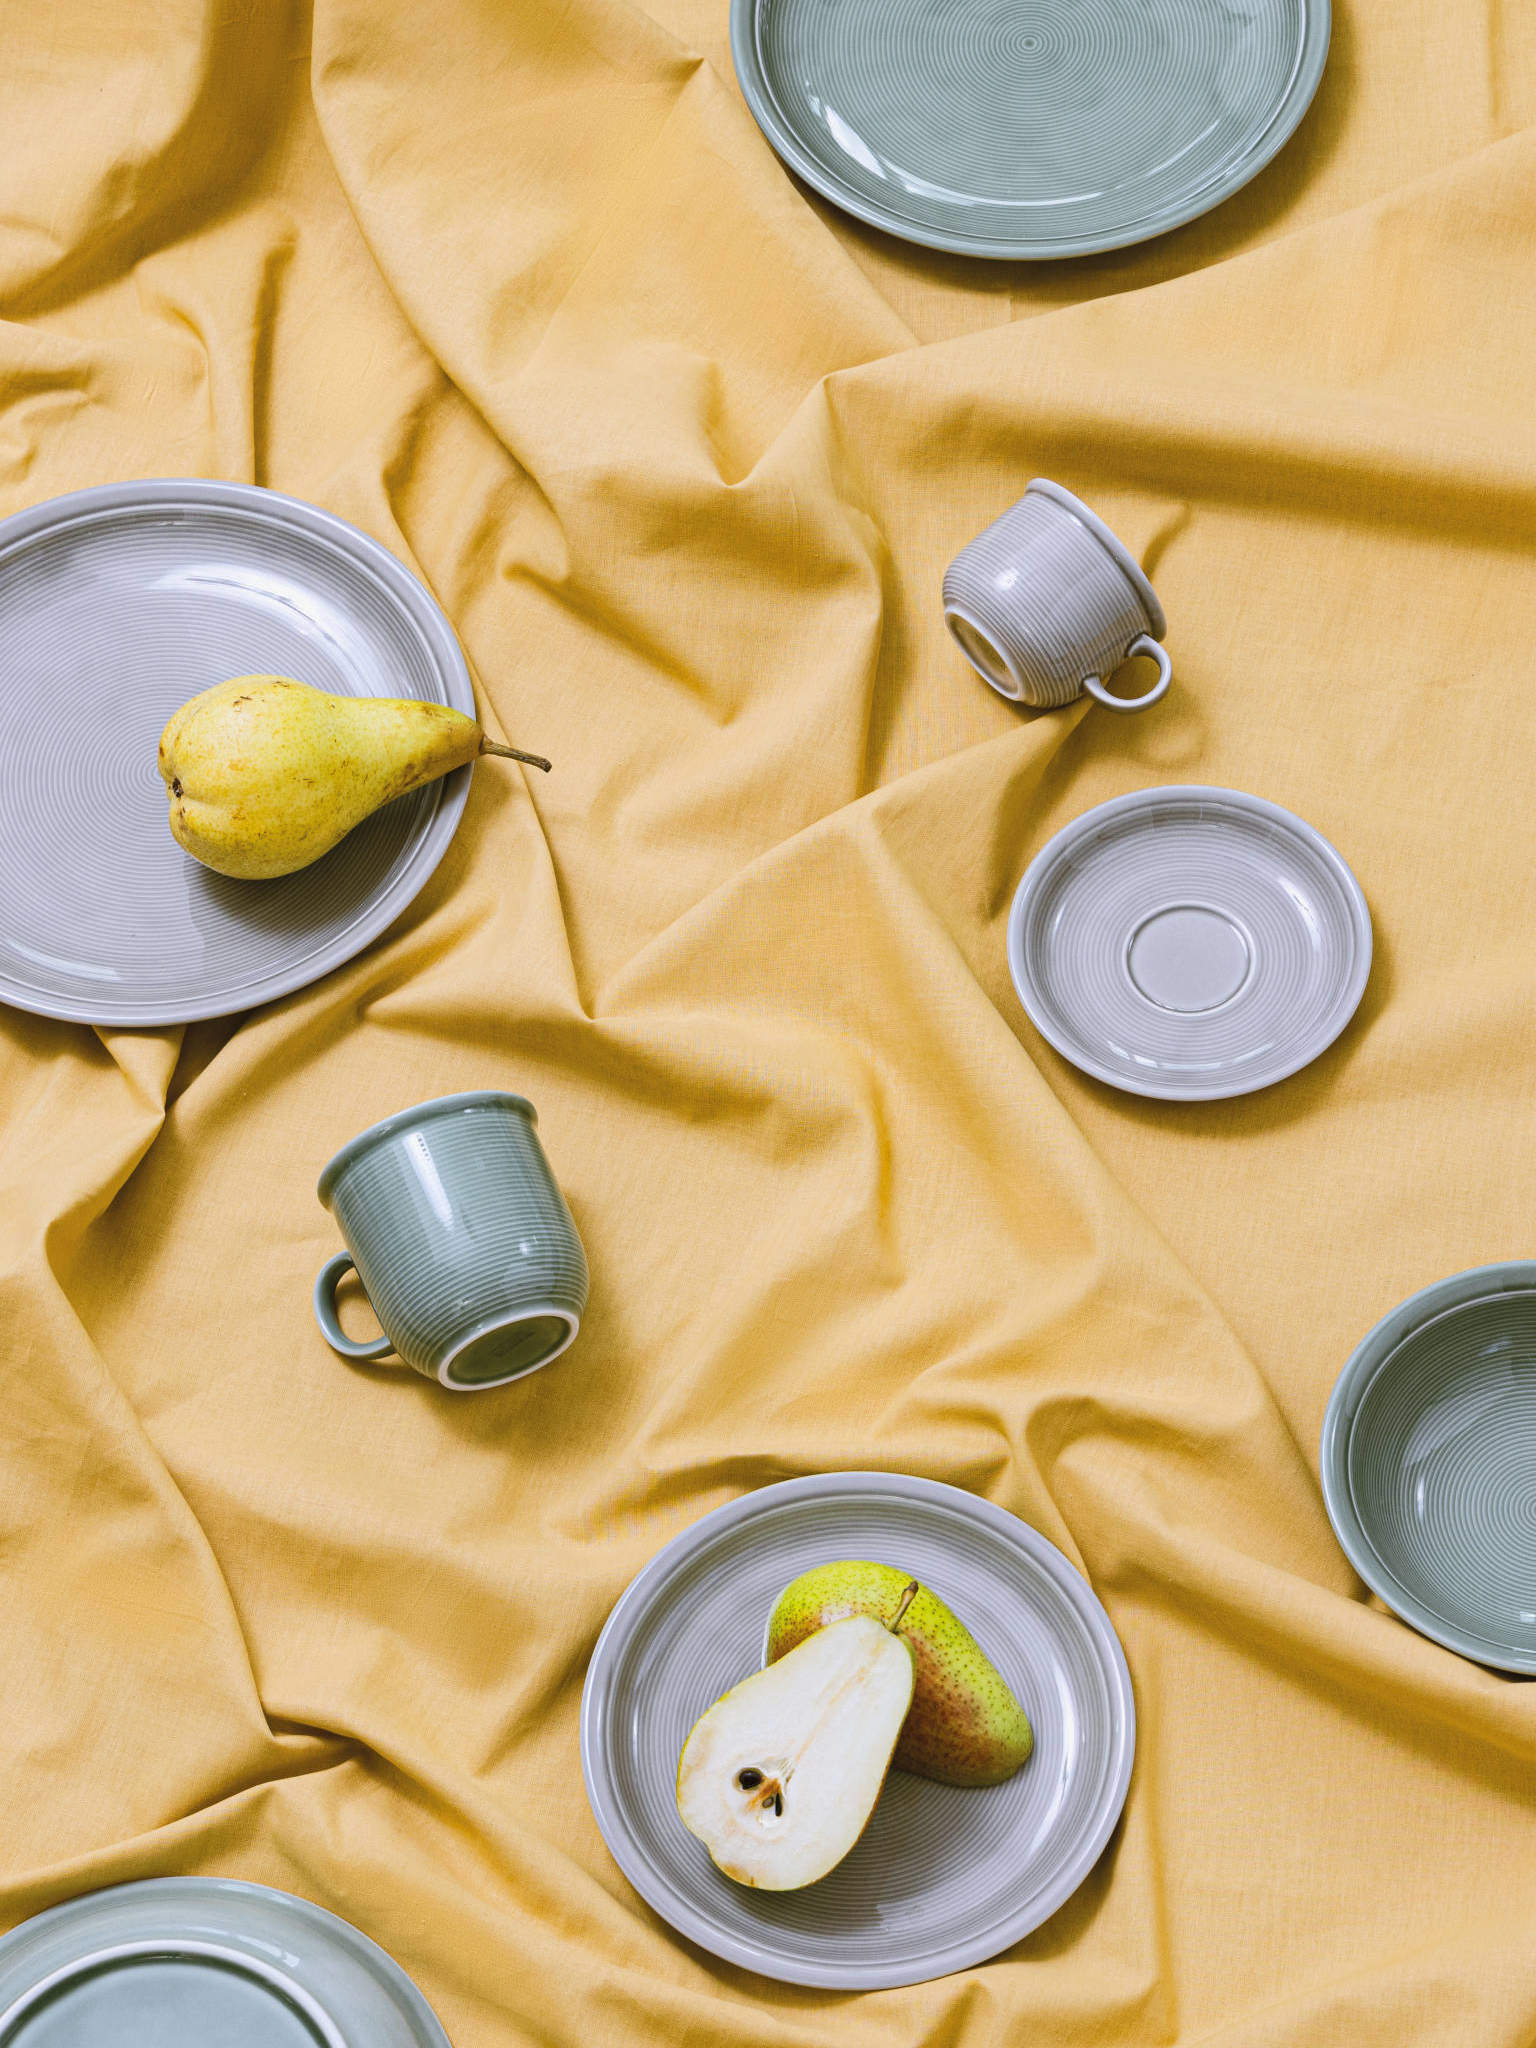 Trend Moon Grey Porzellanartikel auf gelber Tischdecke quer beet verteilt und mit Birne dekoriert